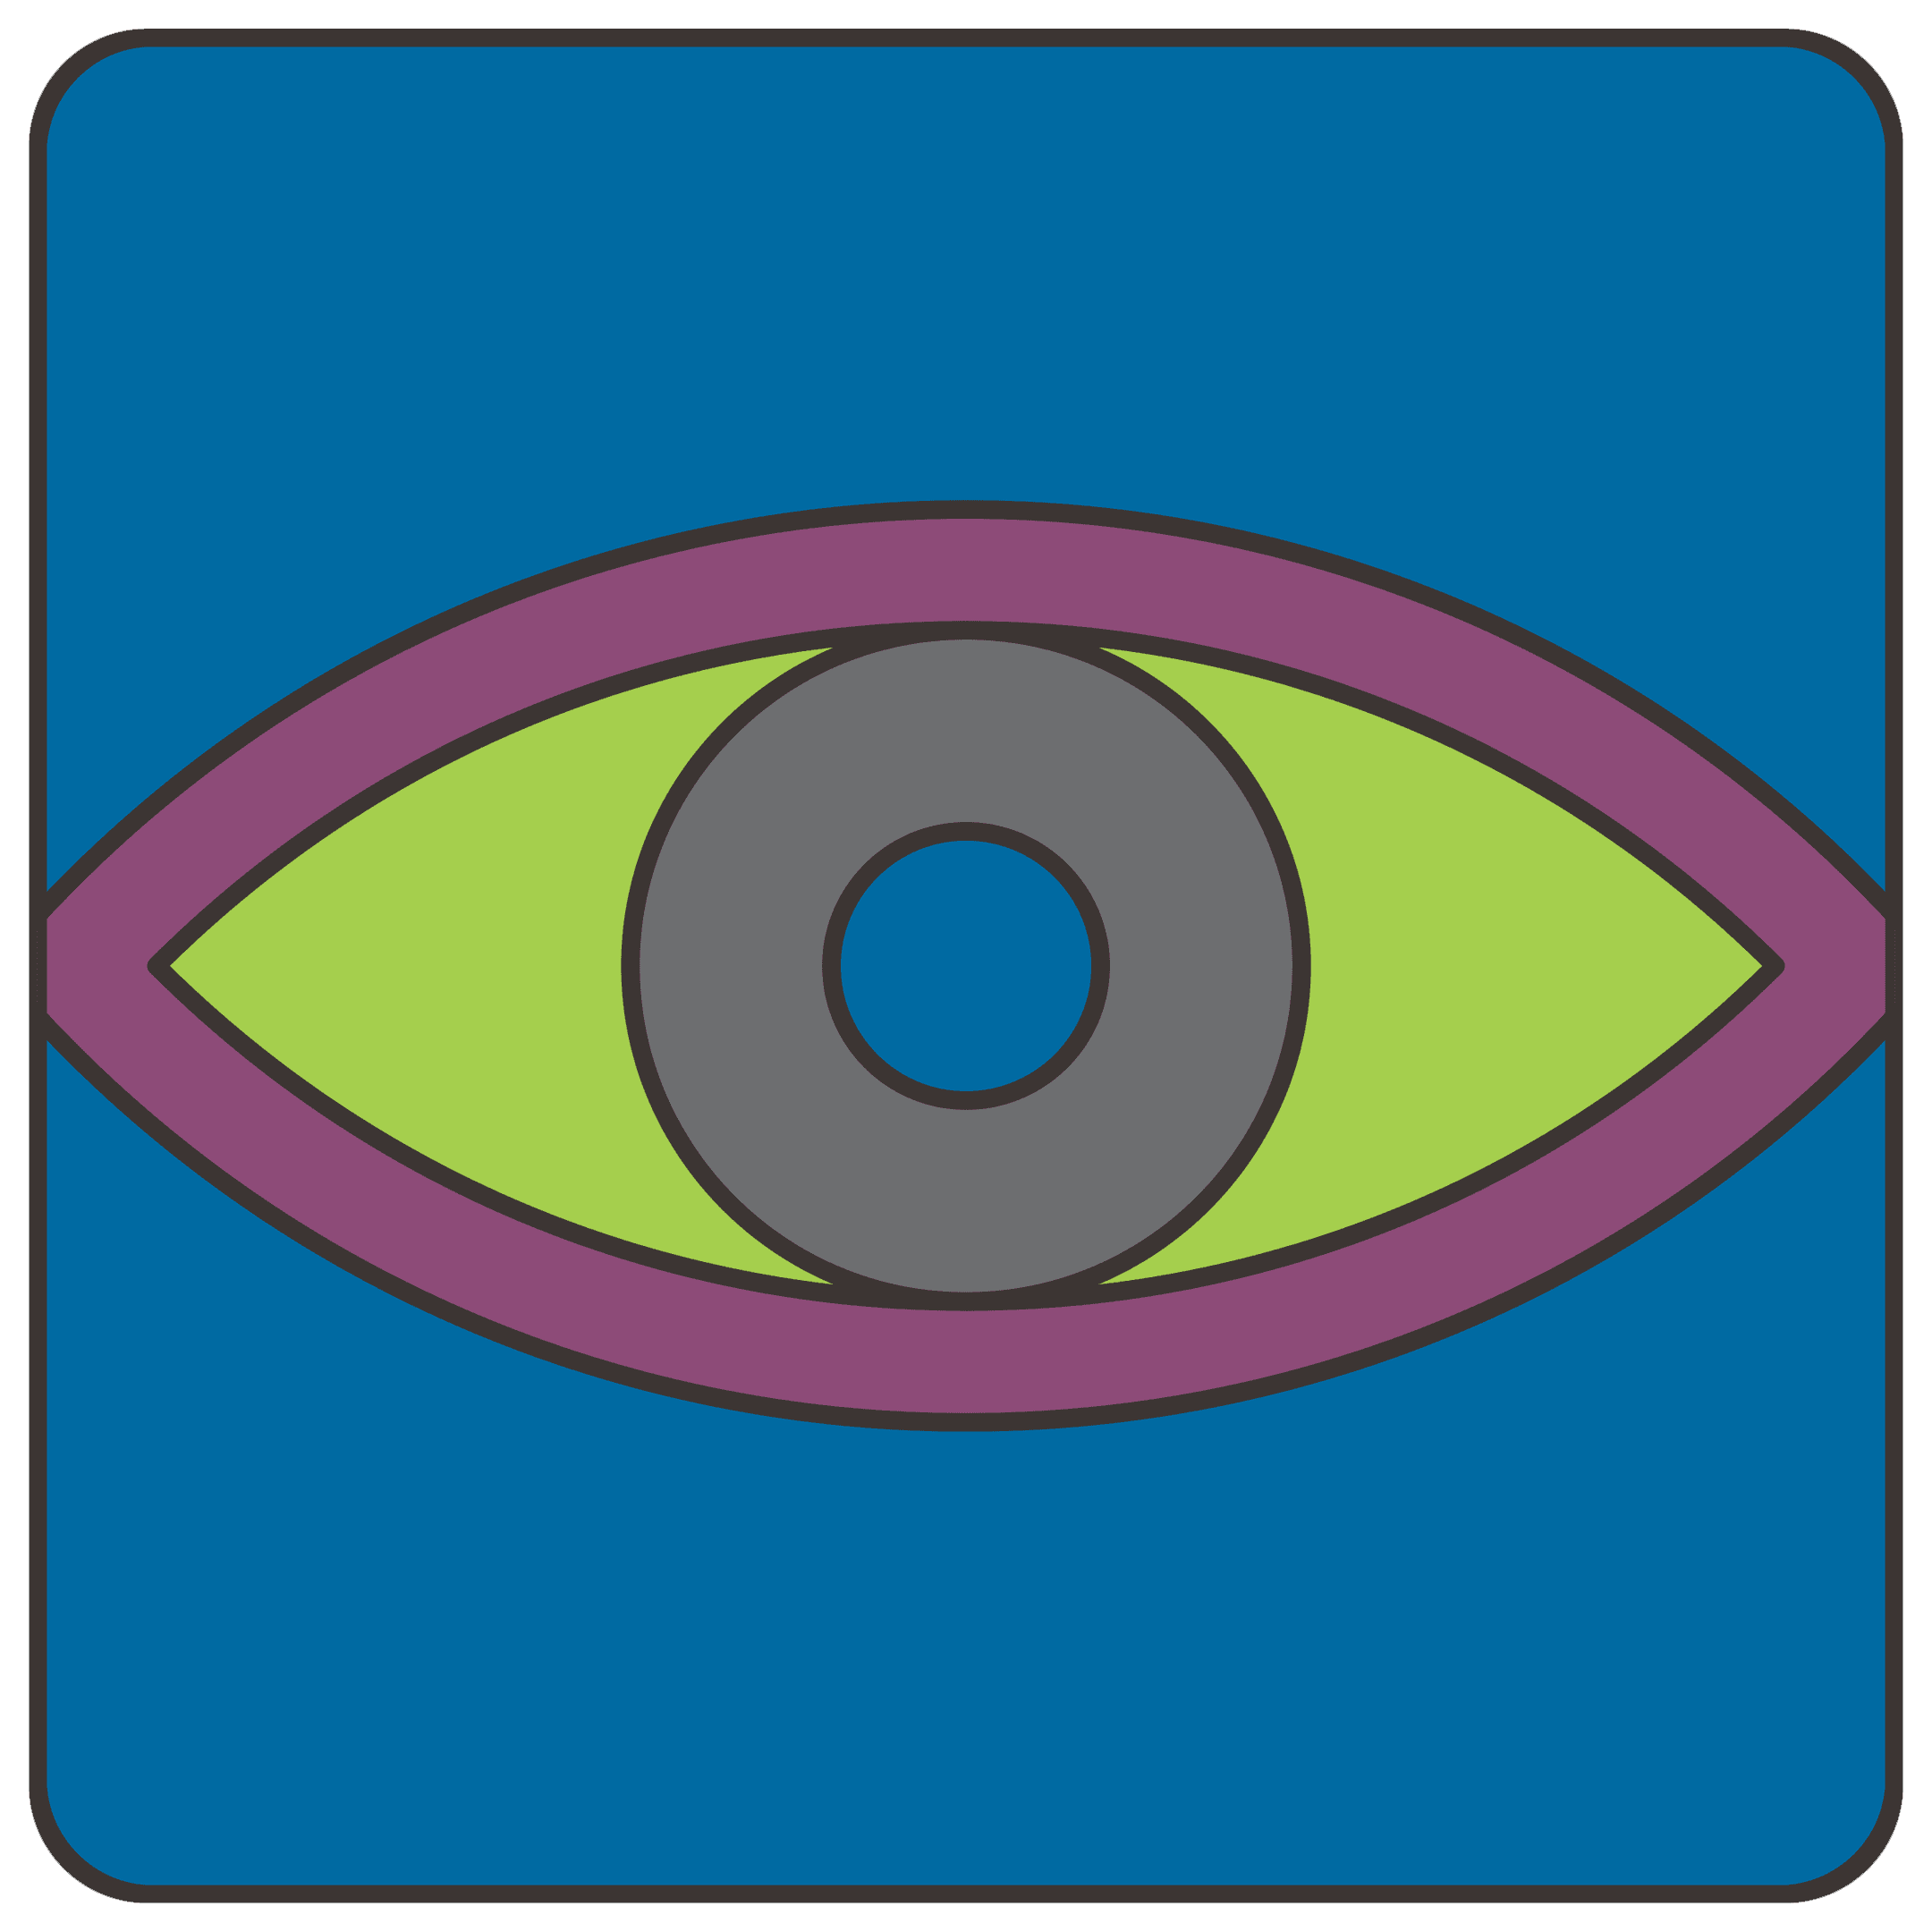 tetrafor 3: the eye